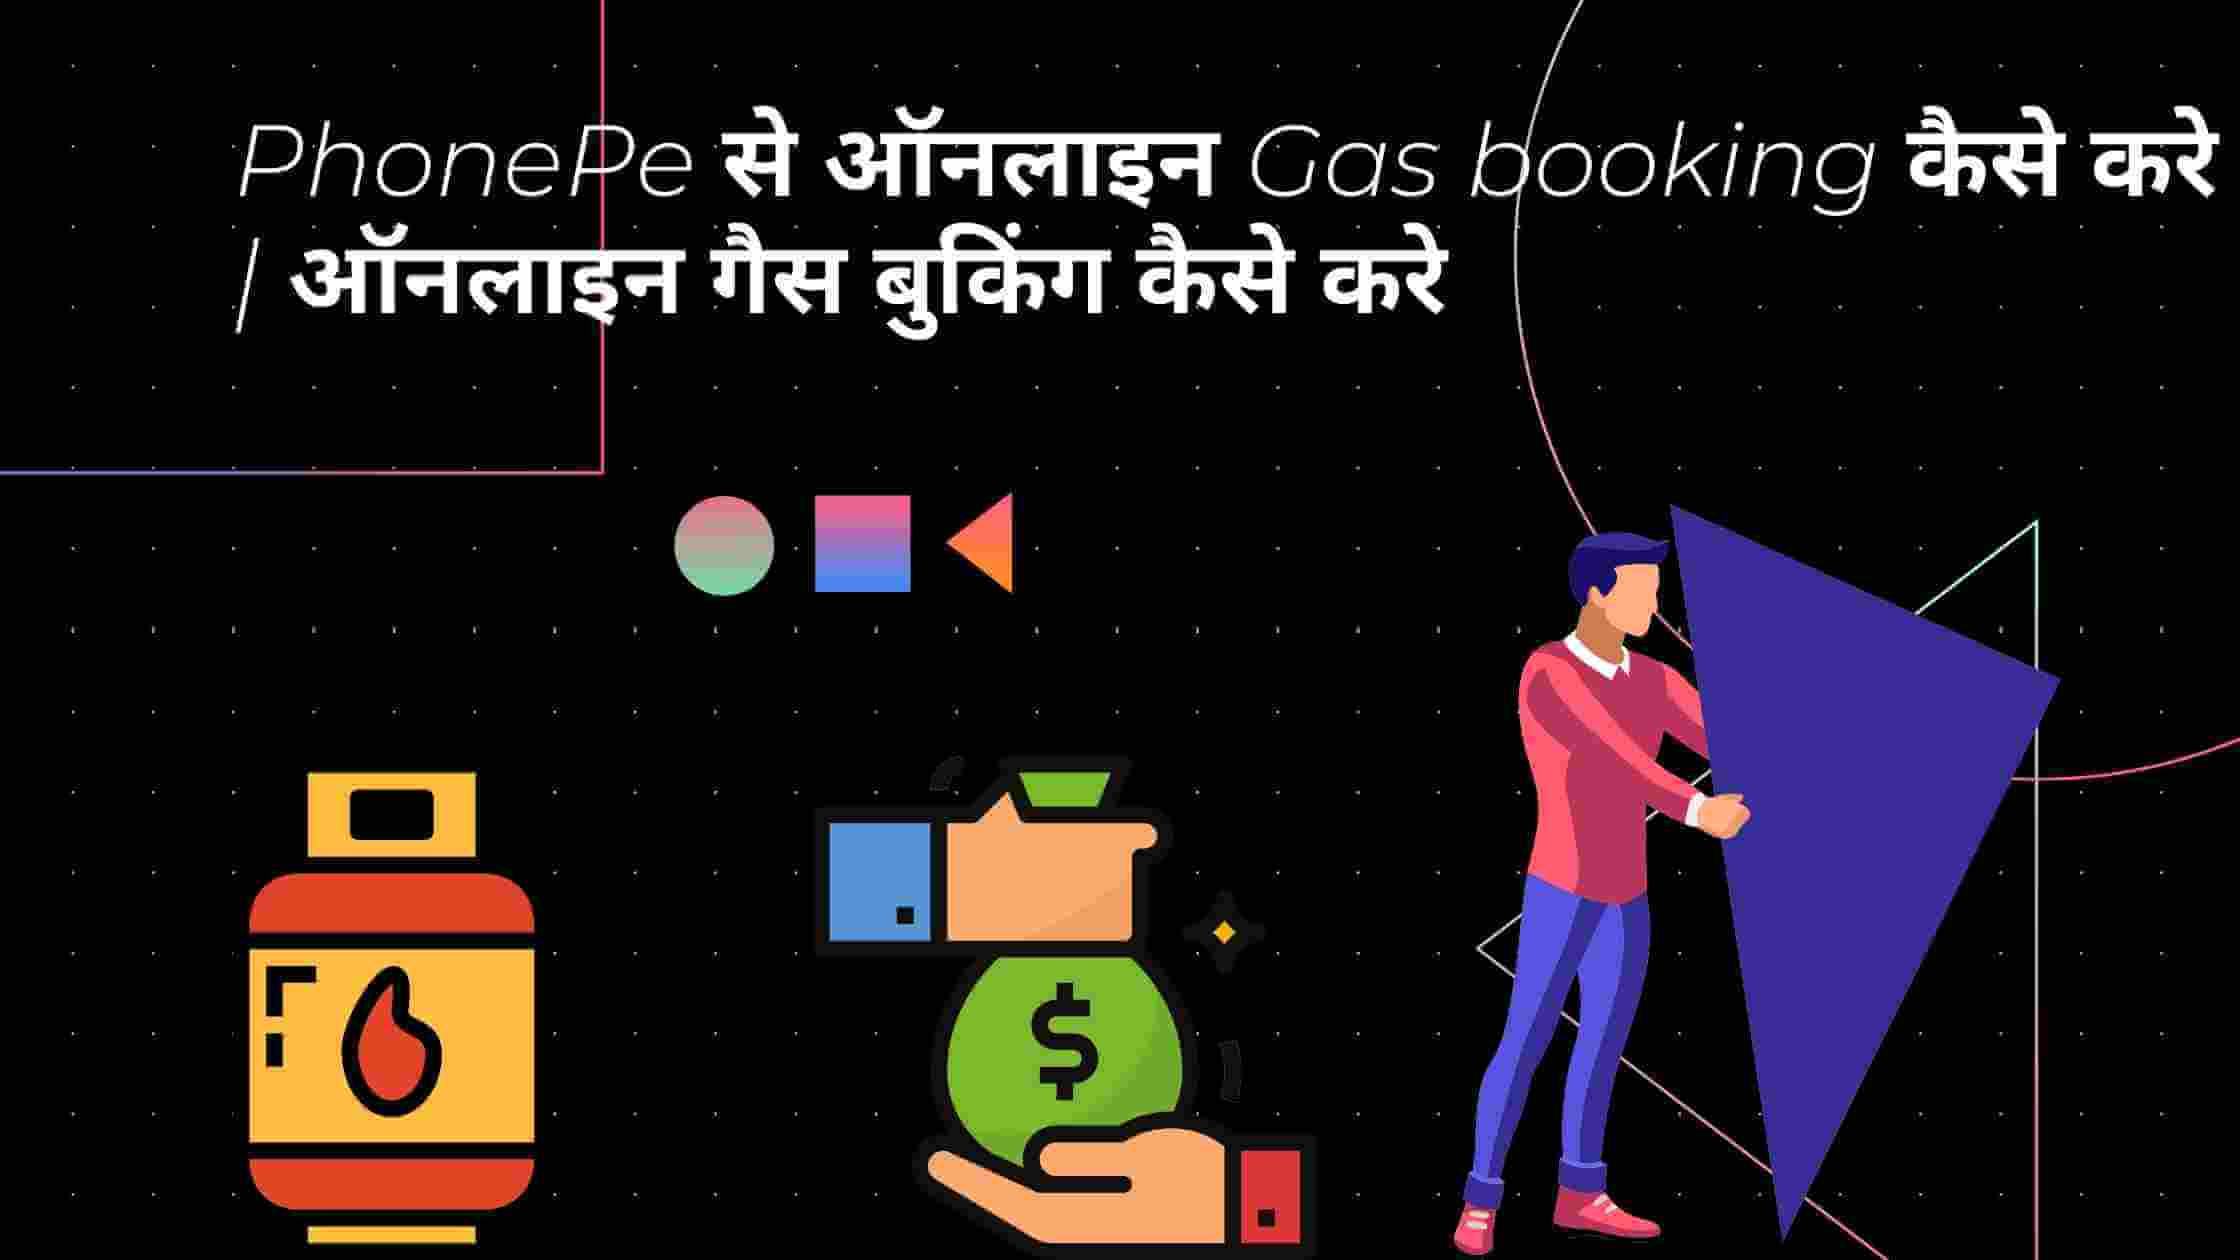 PhonePe से ऑनलाइन Gas booking कैसे करे | ऑनलाइन गैस बुकिंग कैसे करे